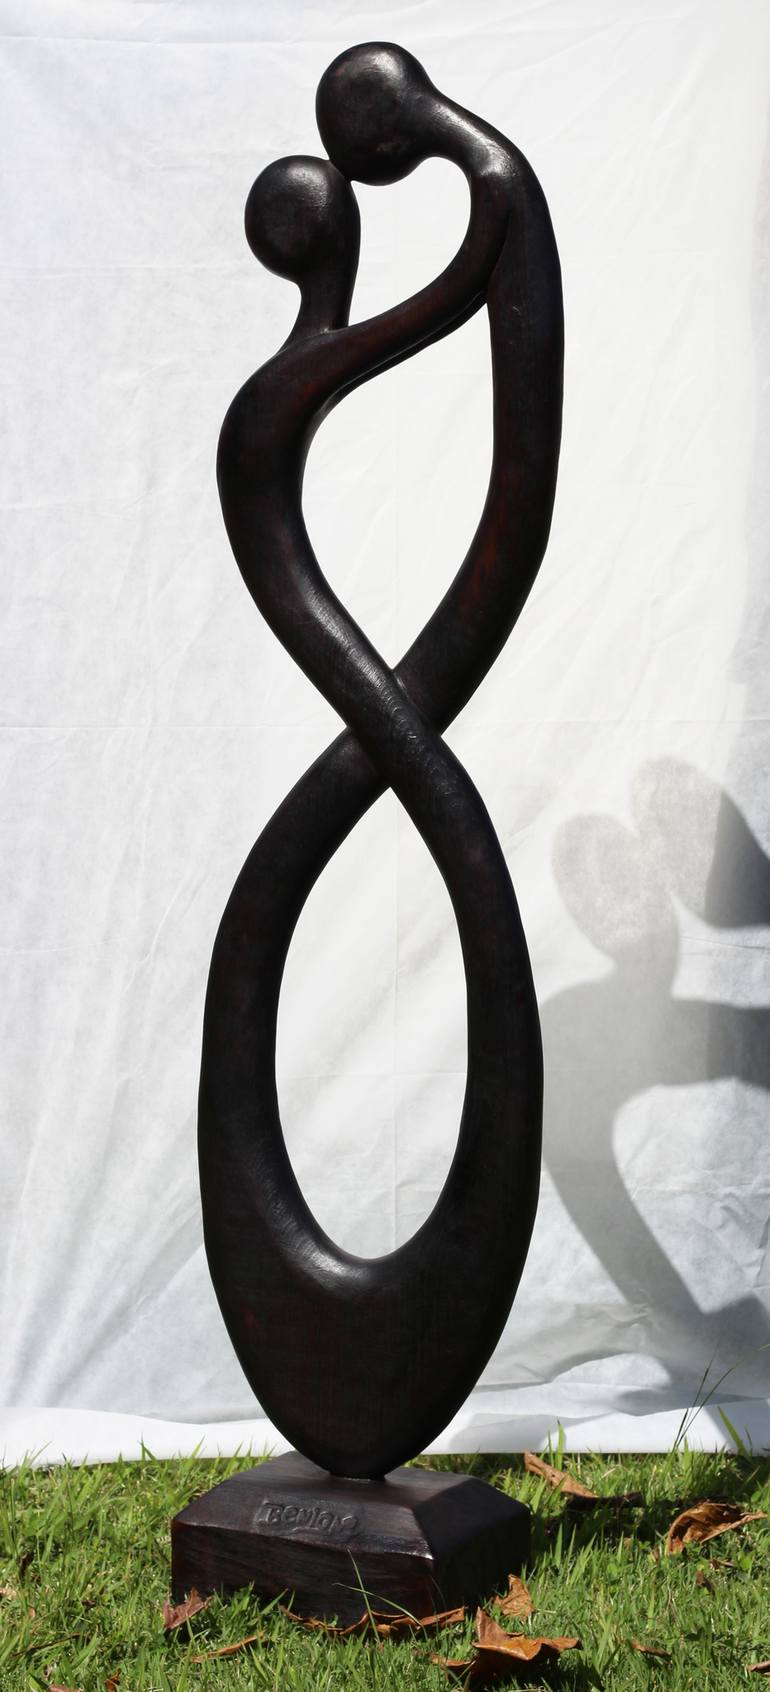 Original Love Sculpture by José Benigno